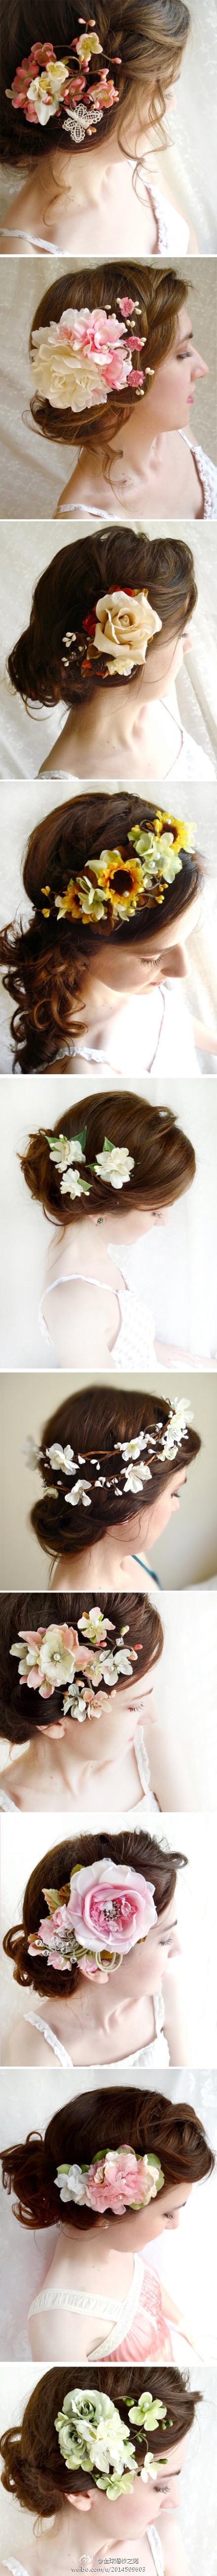 娇艳的花朵装扮的新娘发饰，好唯美浪漫哦~